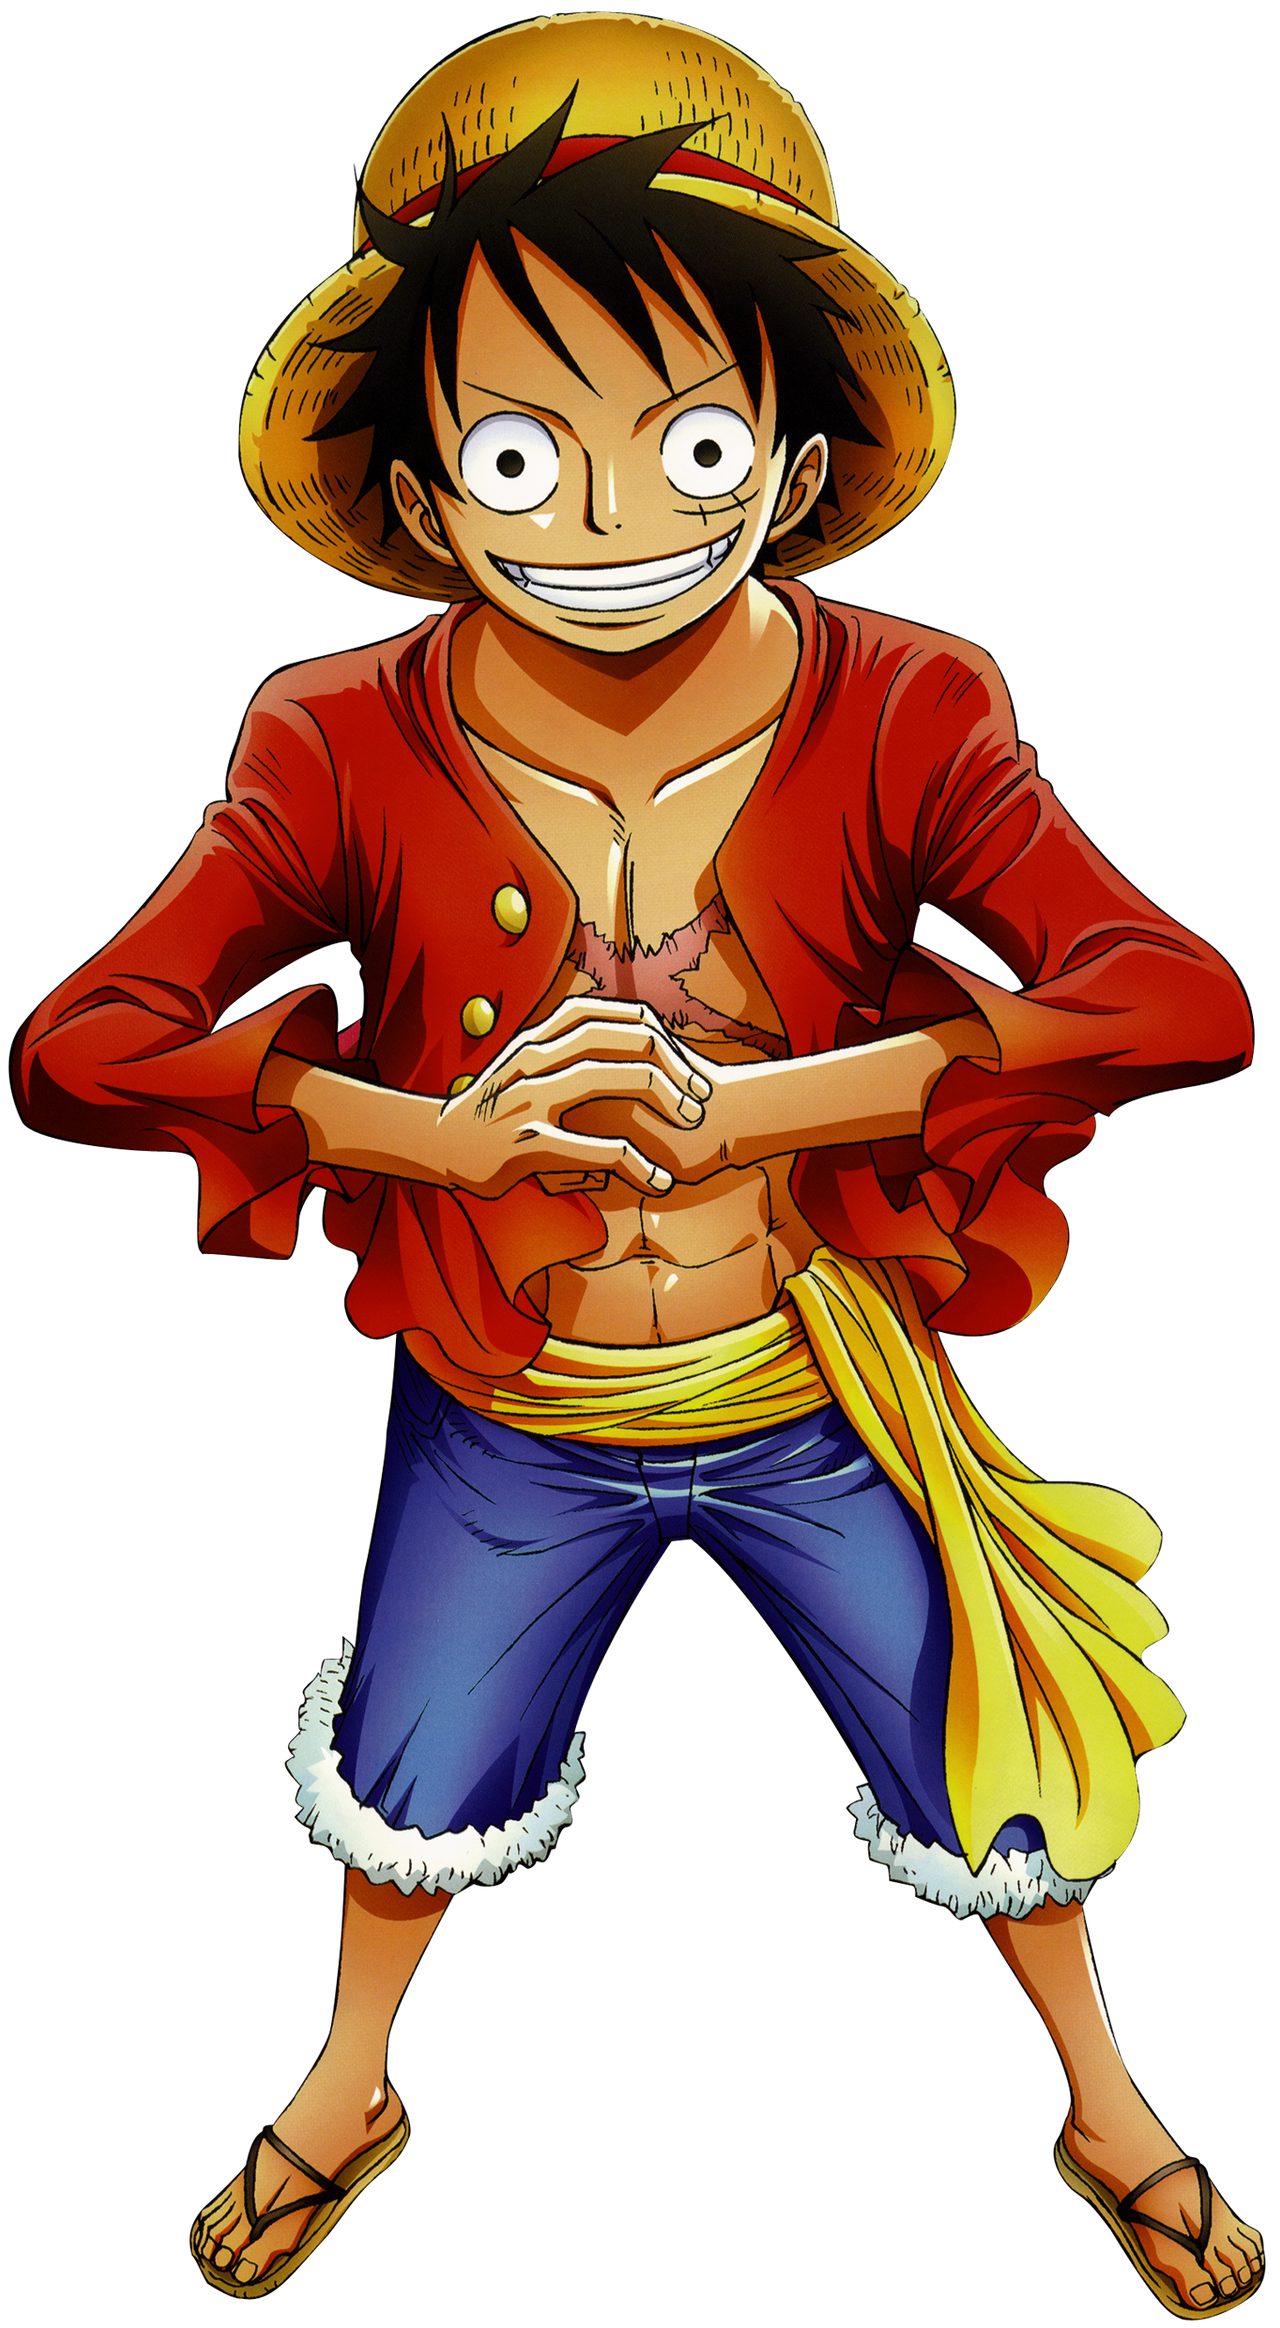 Render] Monkey.D Luffy by Gotemaro on DeviantArt